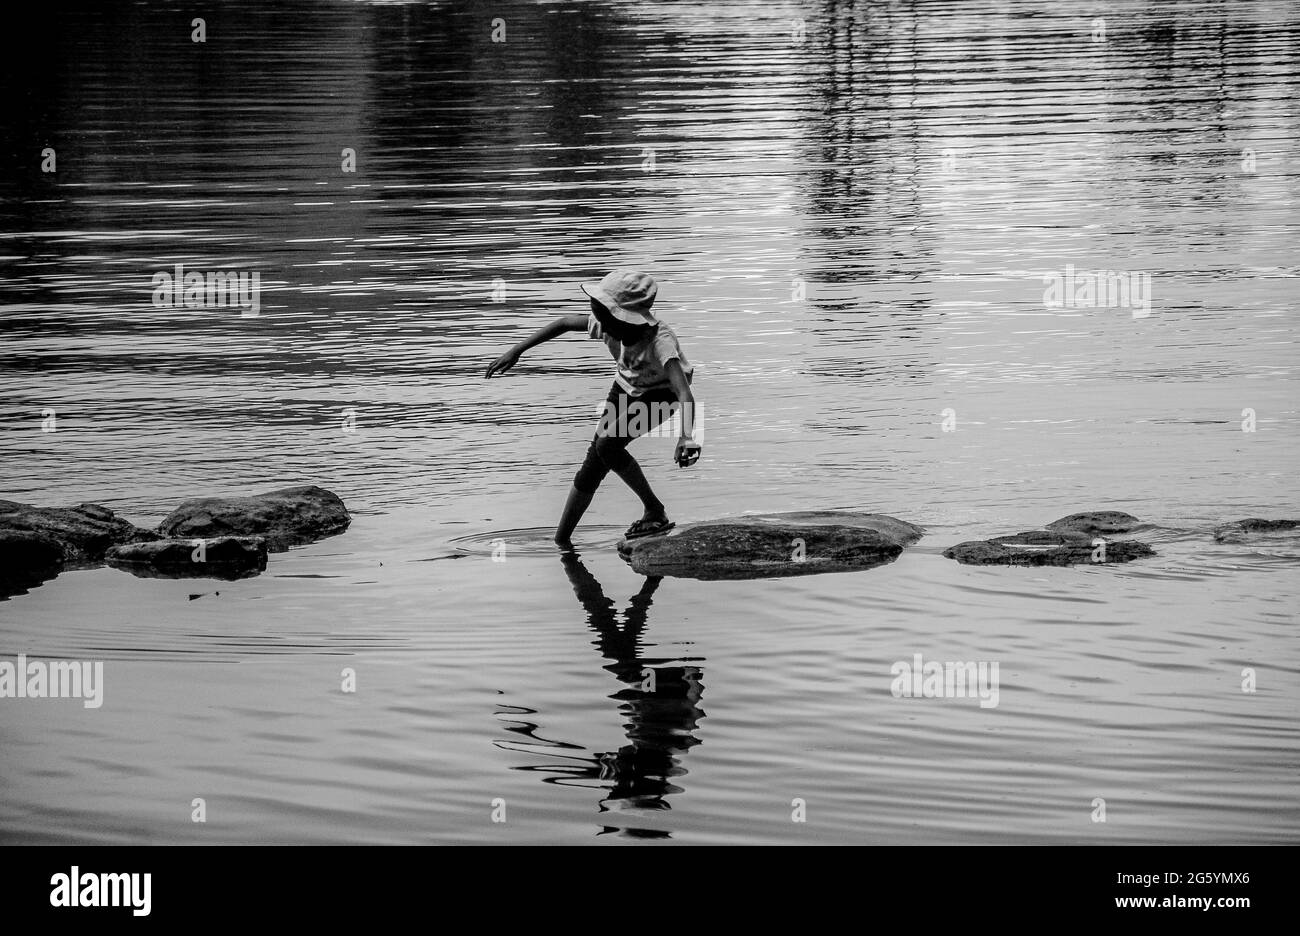 Un enfant marche le long de la rive de la rivière à sembuwaththa sri lanka. Image en noir et blanc Banque D'Images